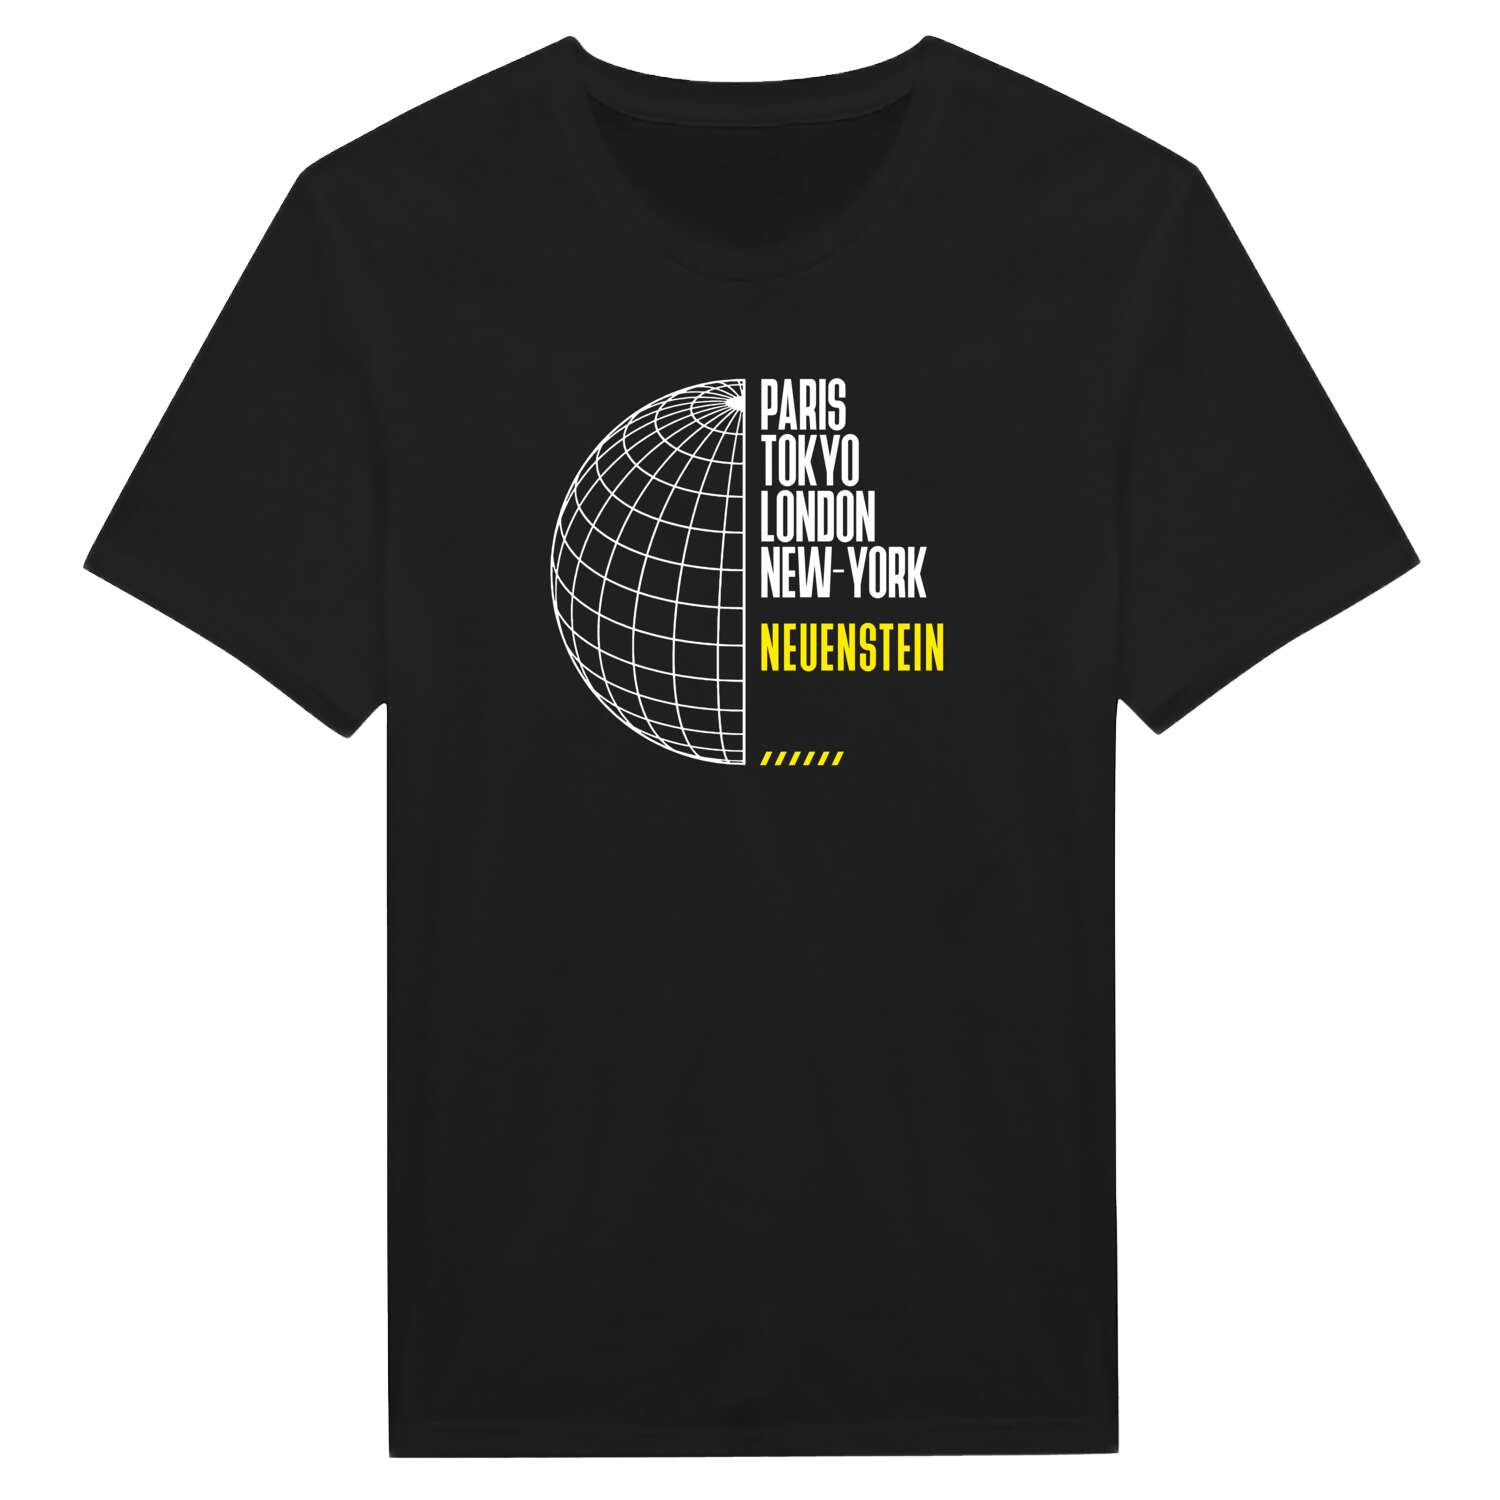 Neuenstein T-Shirt »Paris Tokyo London«